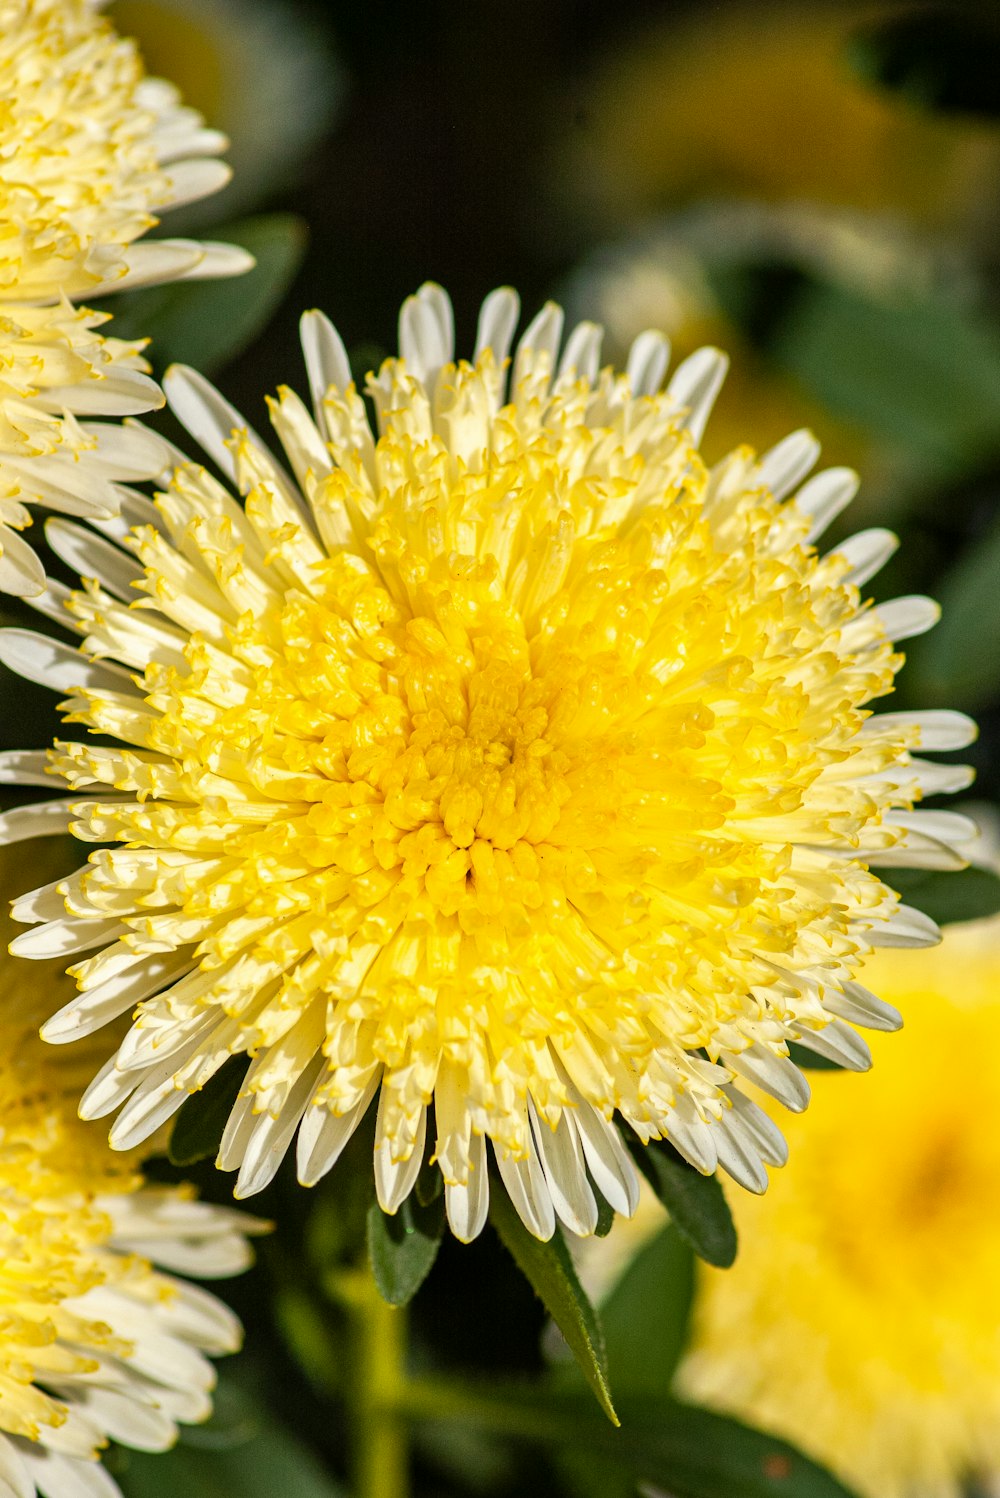 fleur jaune et blanche dans la photographie à l’objectif macro